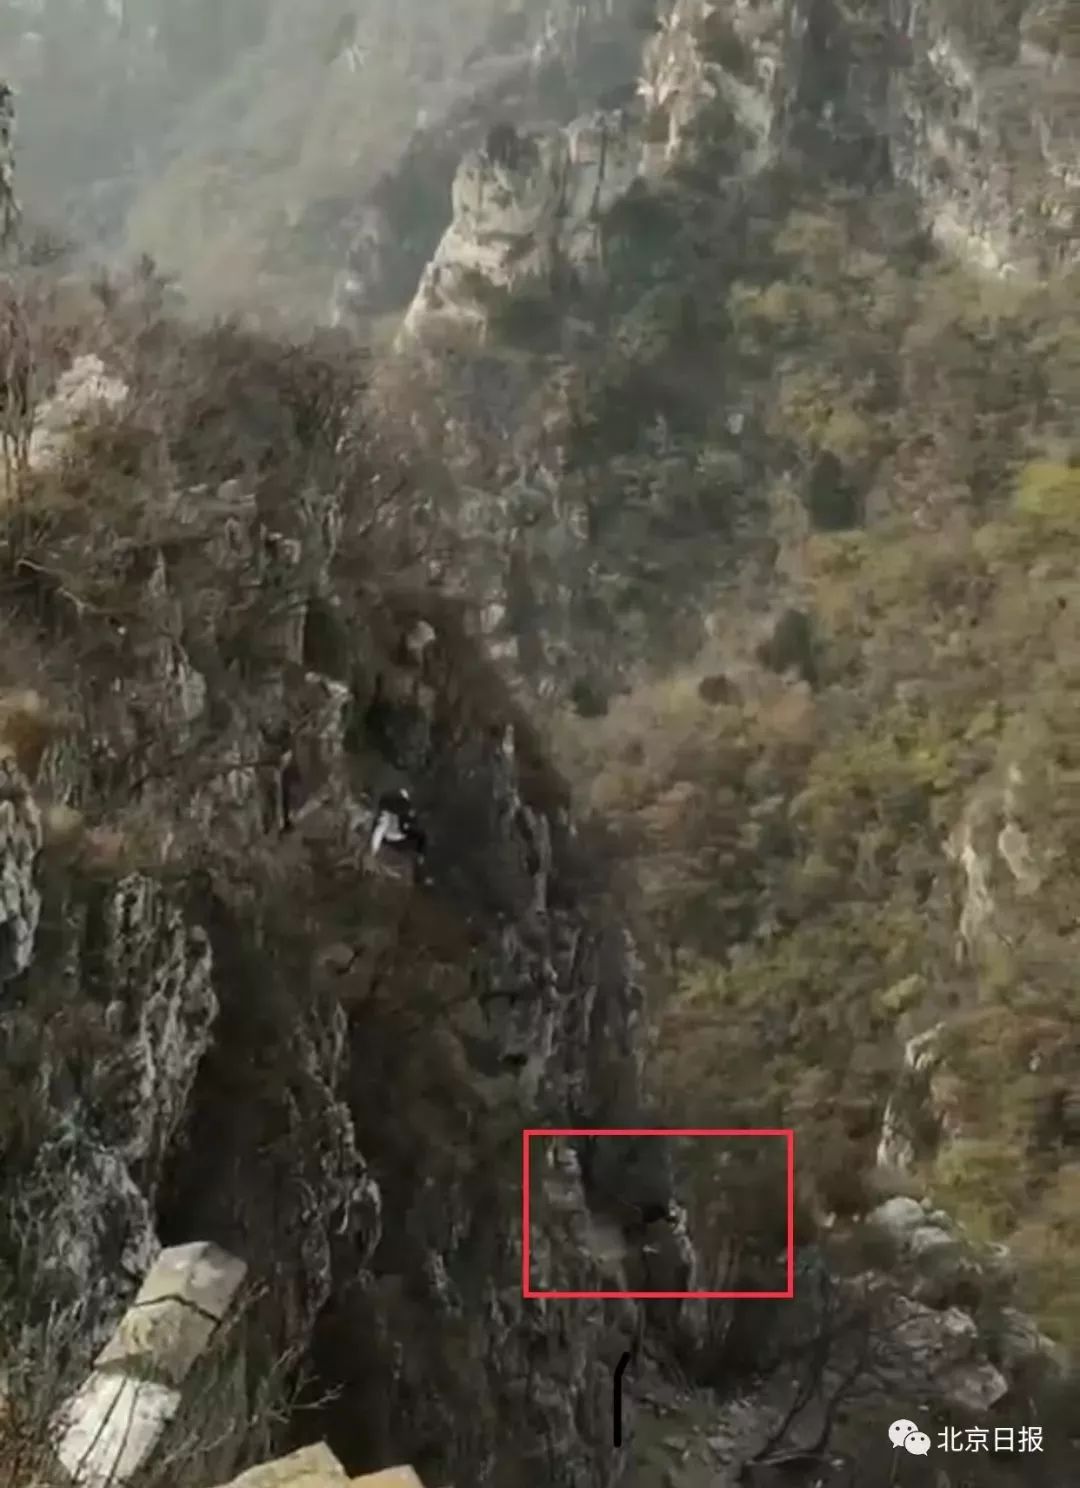 北京一女驴友爬野长城不慎坠崖!游客拍下全程!